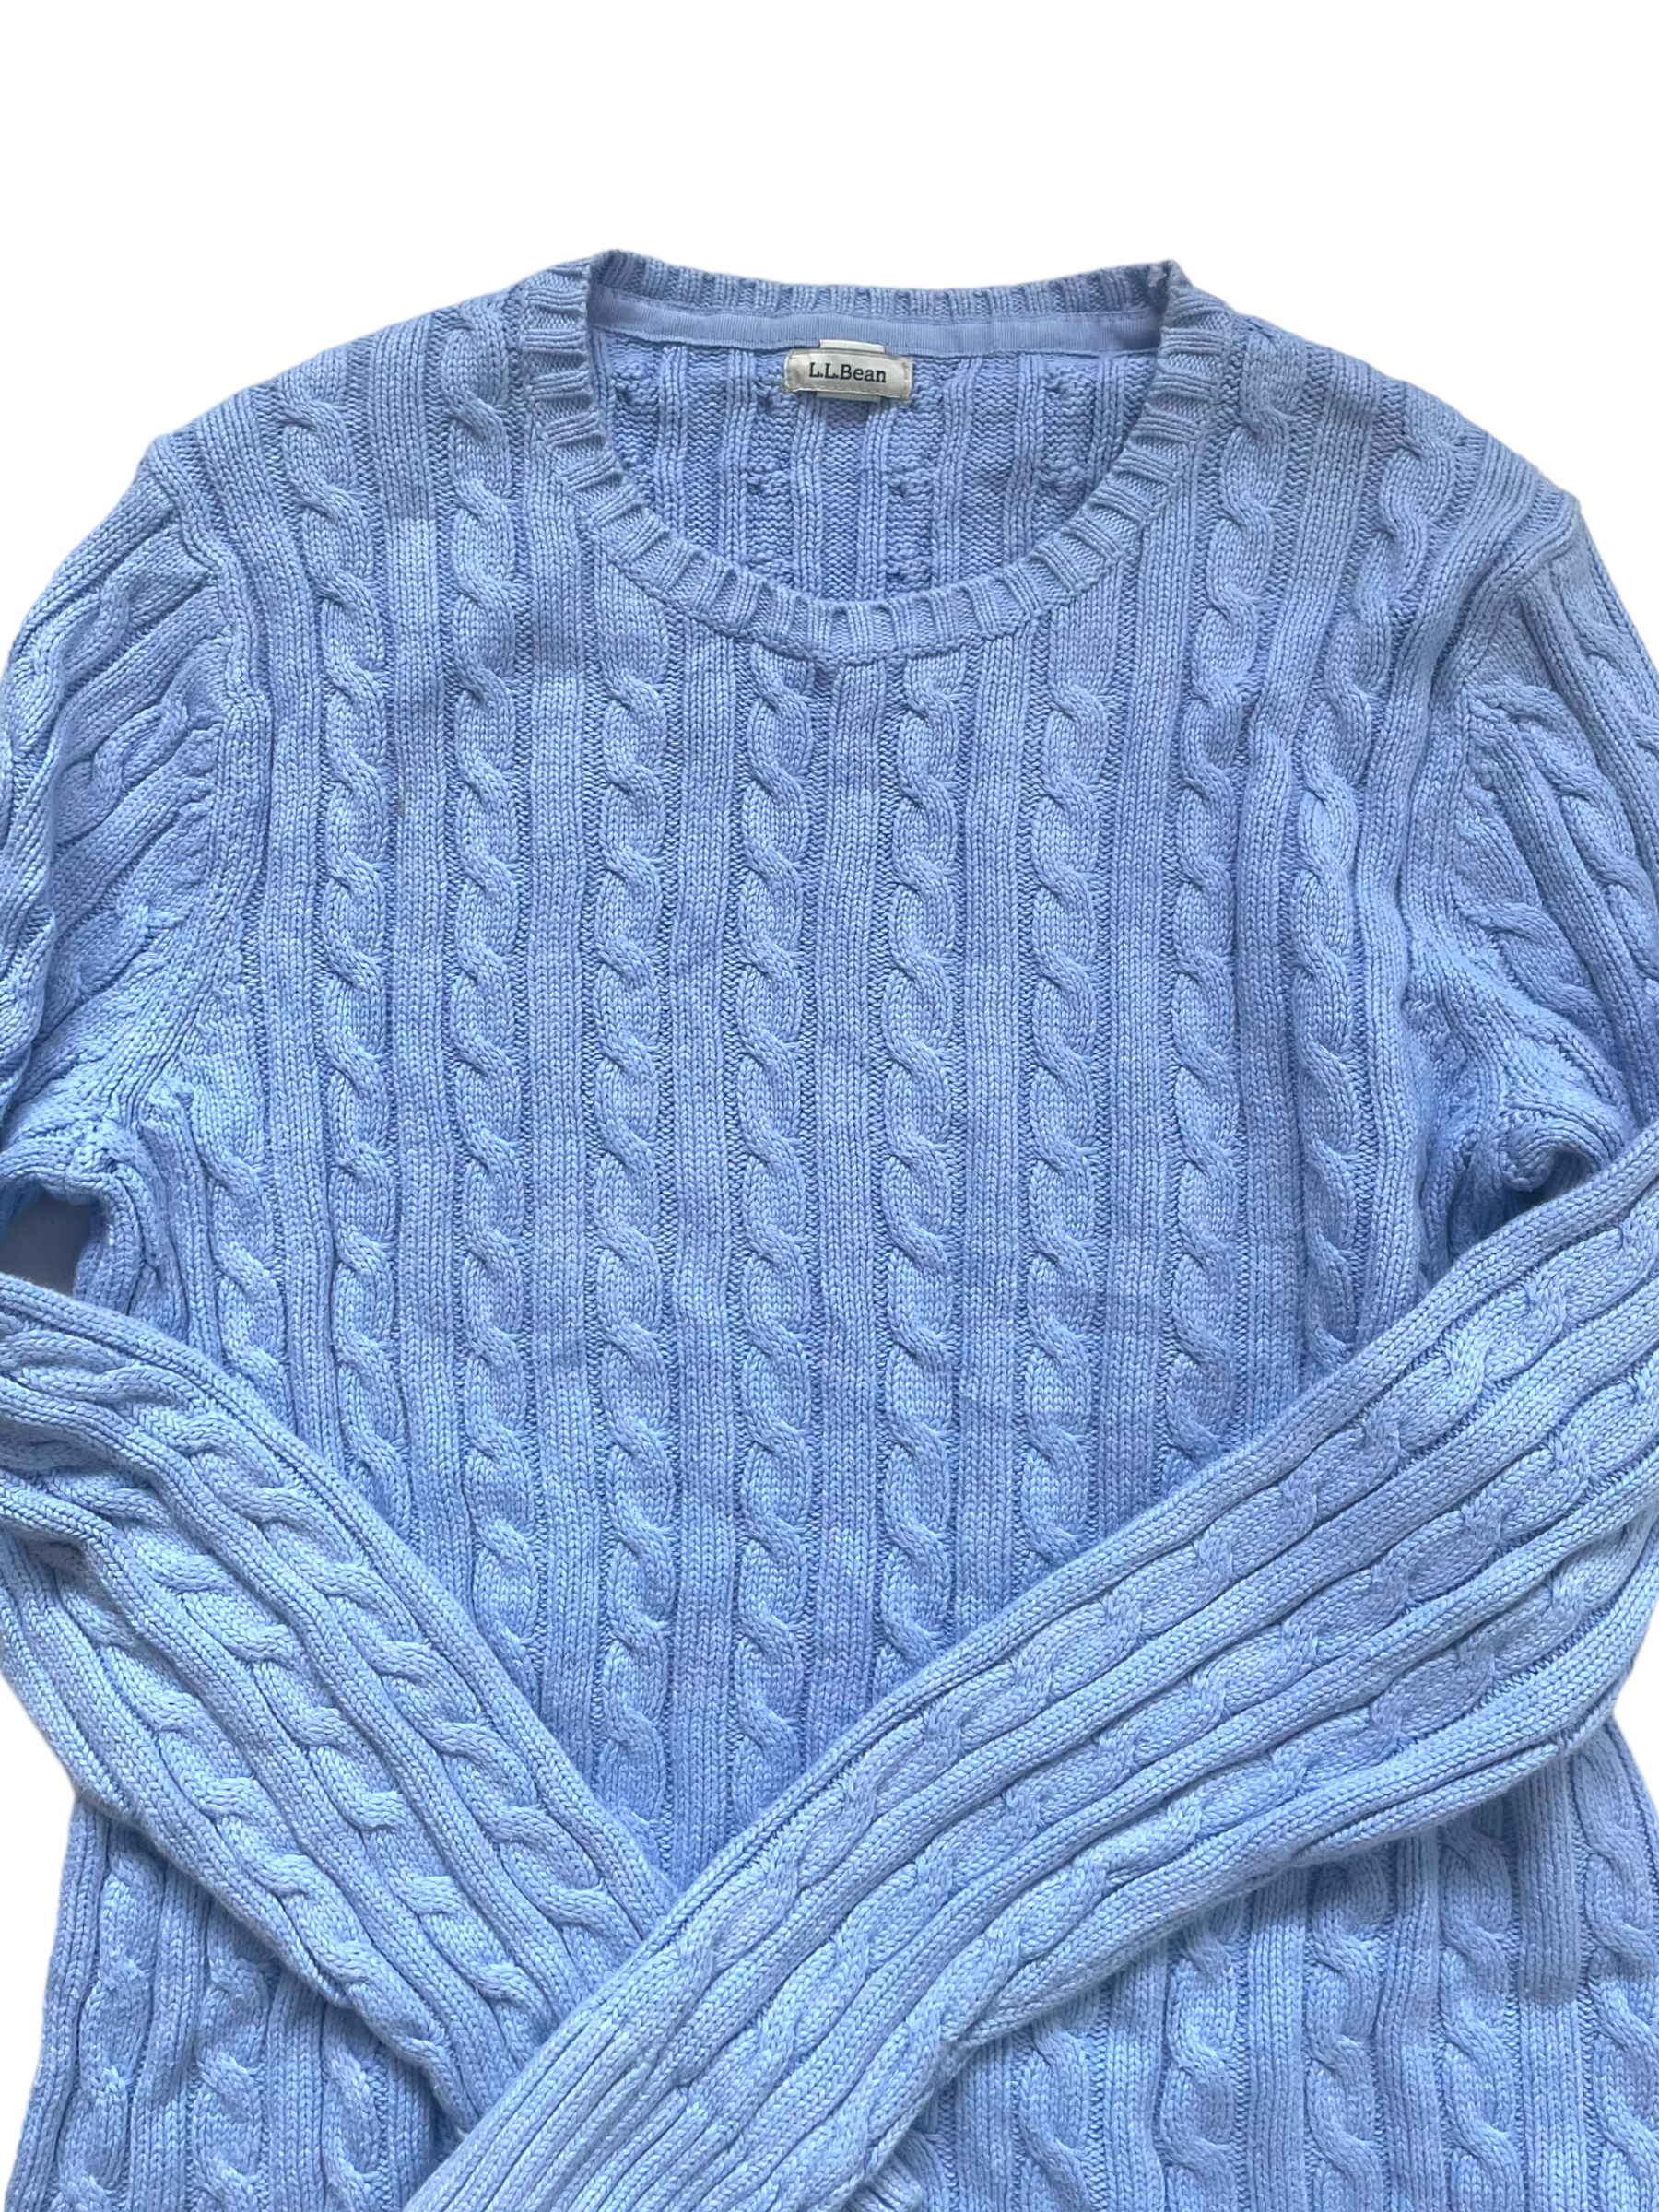 Women's sweater - Ralph Lauren Hilfiger L.L.Bean